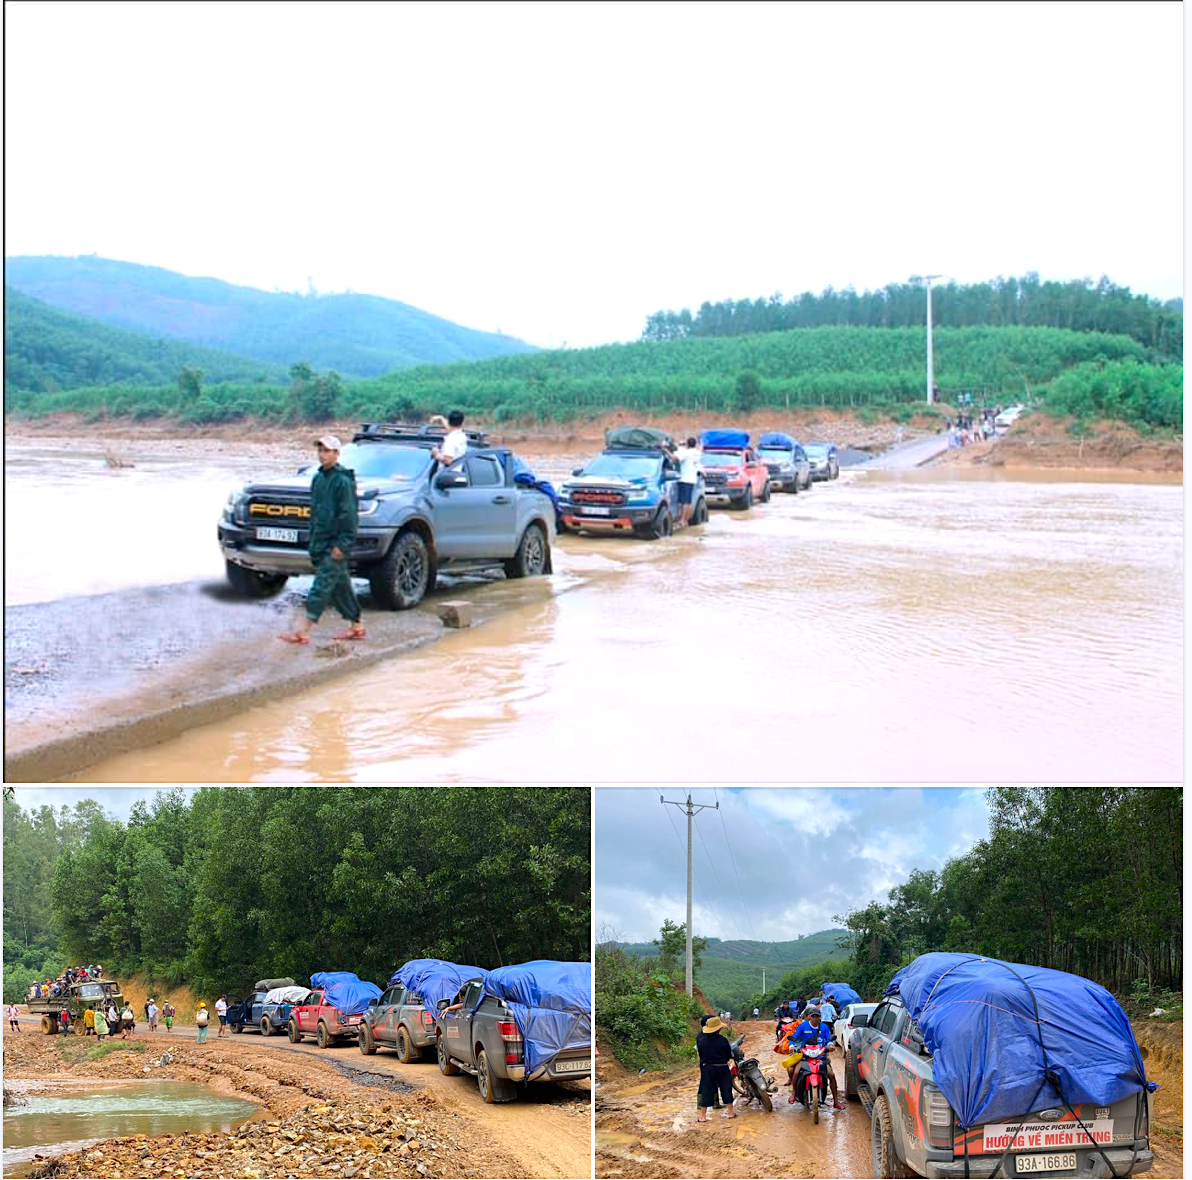 Bình Phước Pickup vượt quãng đường xa, đến tận vùng lũ để hỗ trợ người dân Quảng Trị